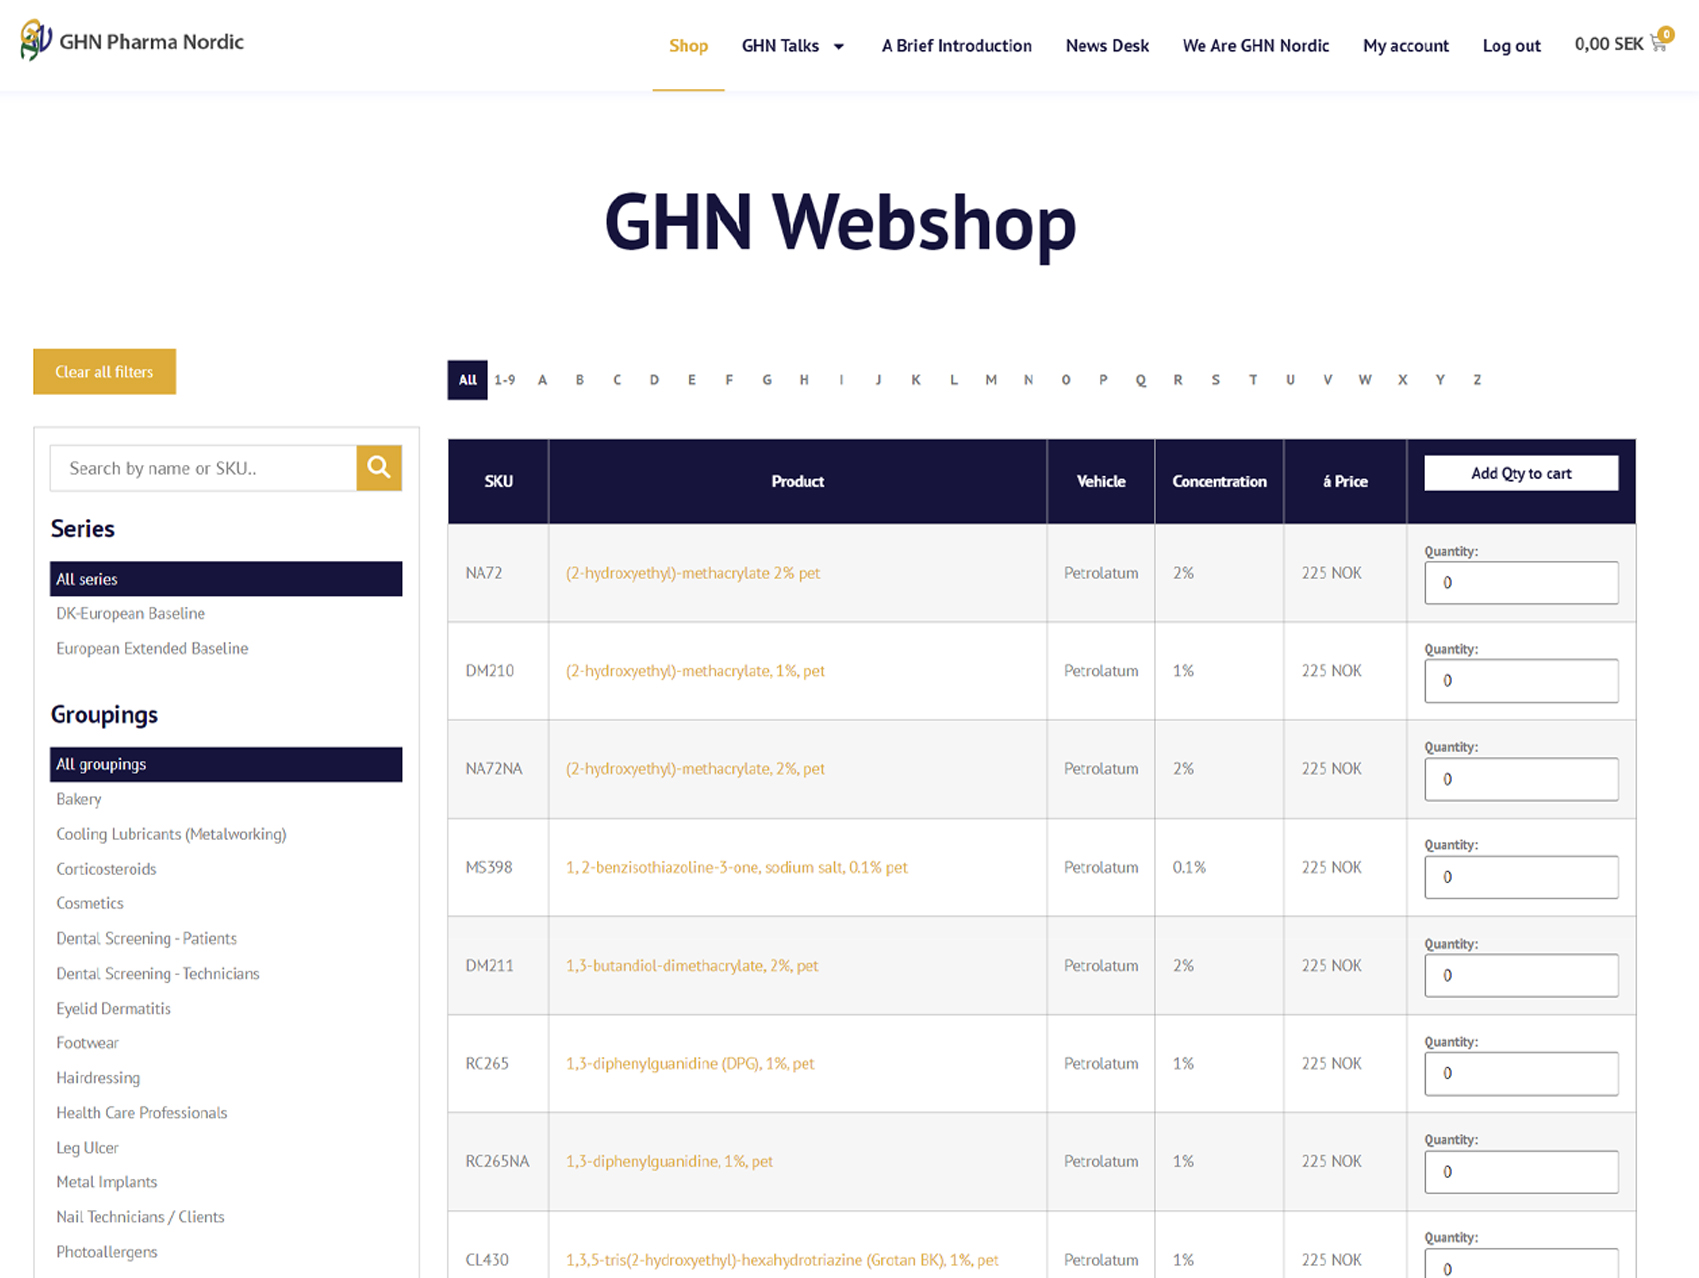 GHN nordic webbshop